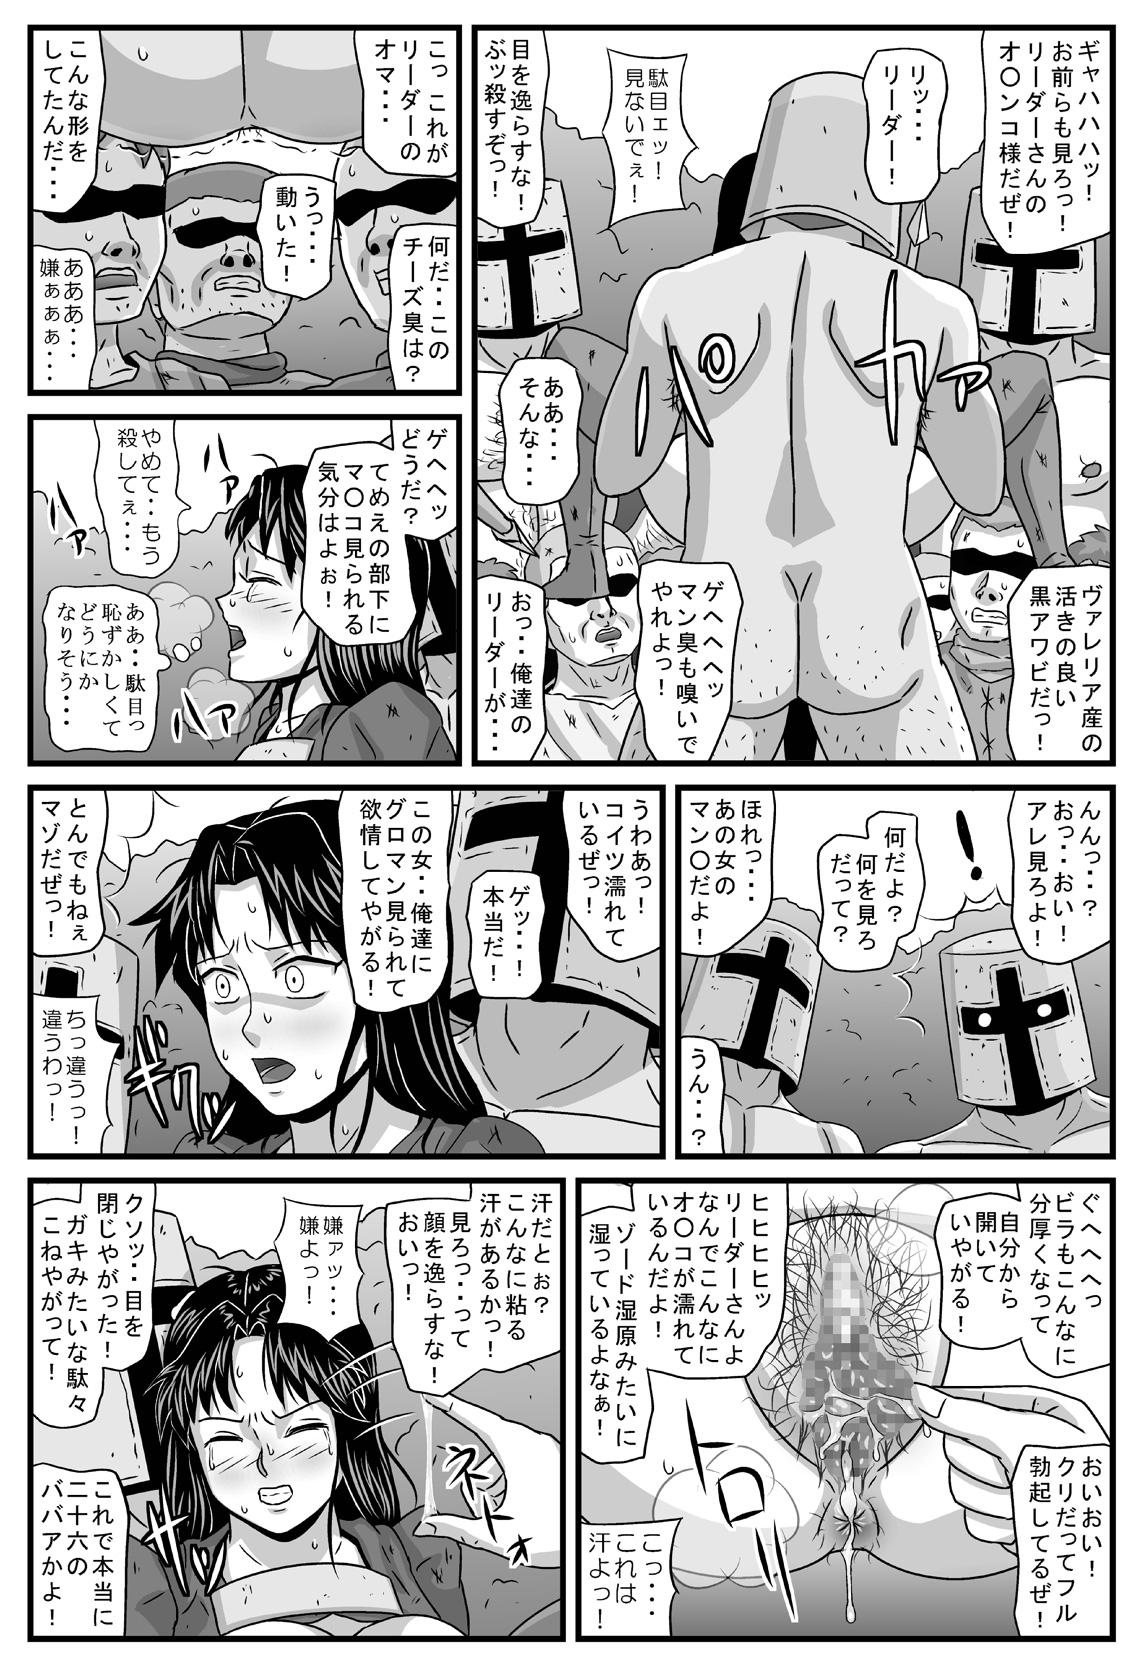 Strange Guerrilla no Onna Leader wa Honoo no 26-sai Kurokami Shojo - Tactics ogre Gaygroupsex - Page 8